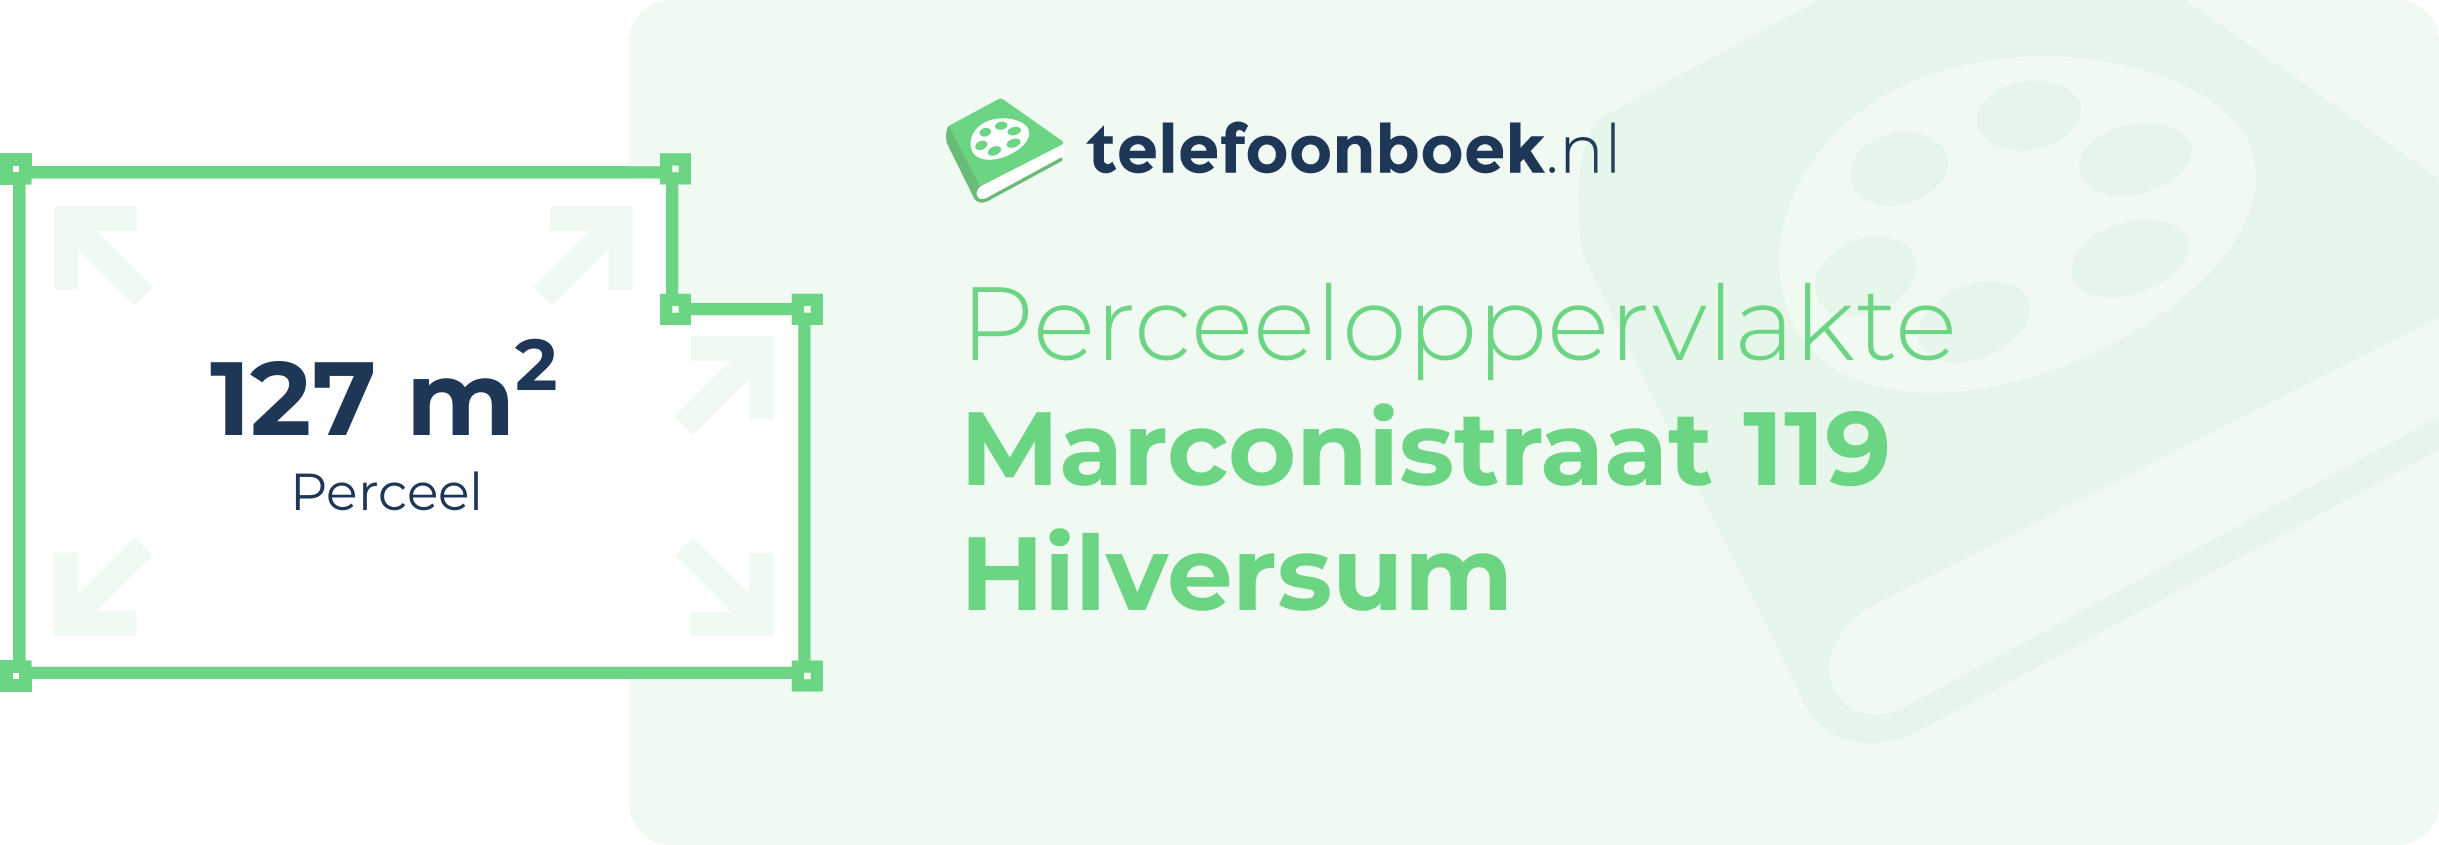 Perceeloppervlakte Marconistraat 119 Hilversum